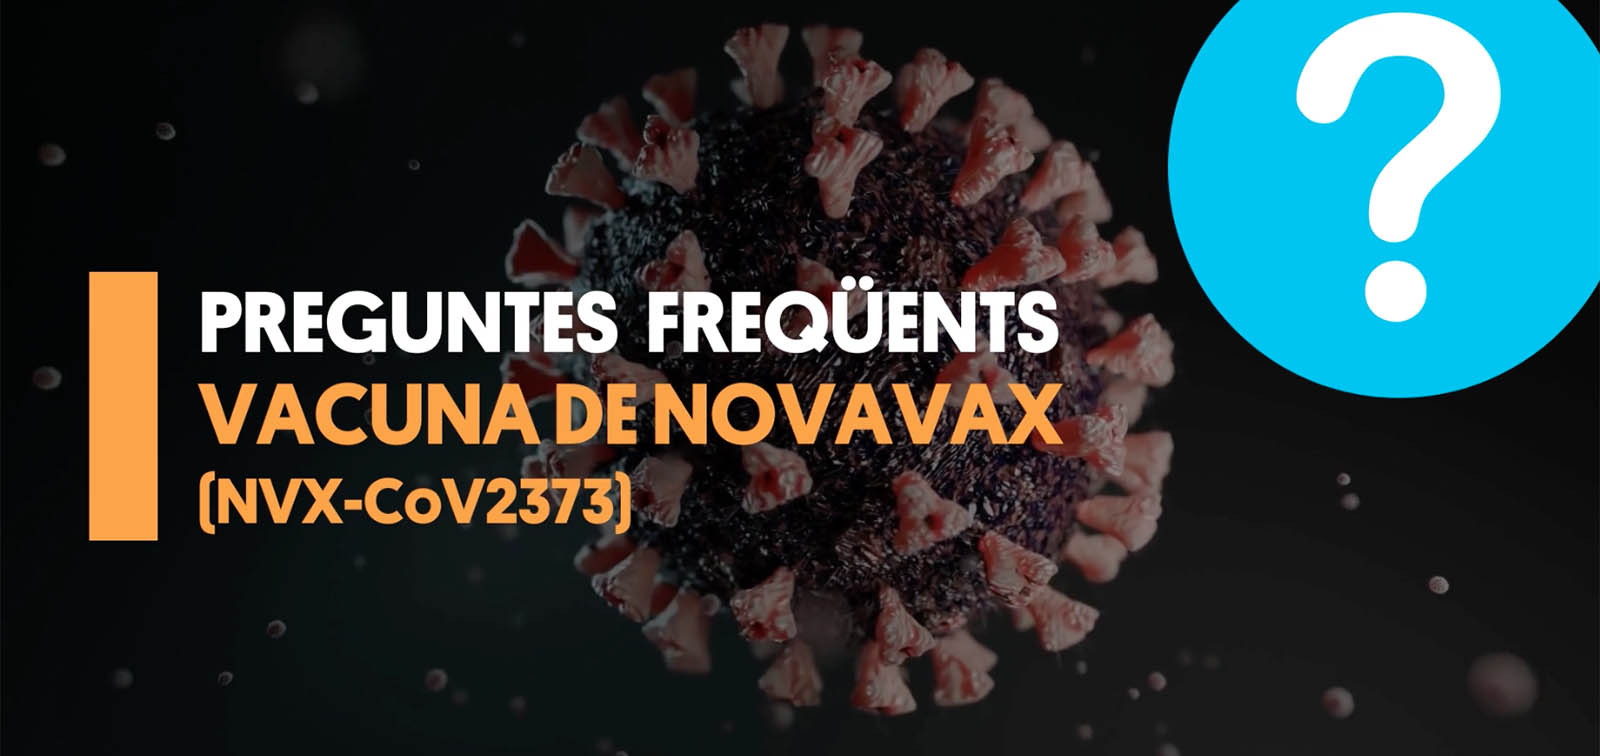 Preguntes freqüents sobre la vacuna de Novavax per a la COVID-19